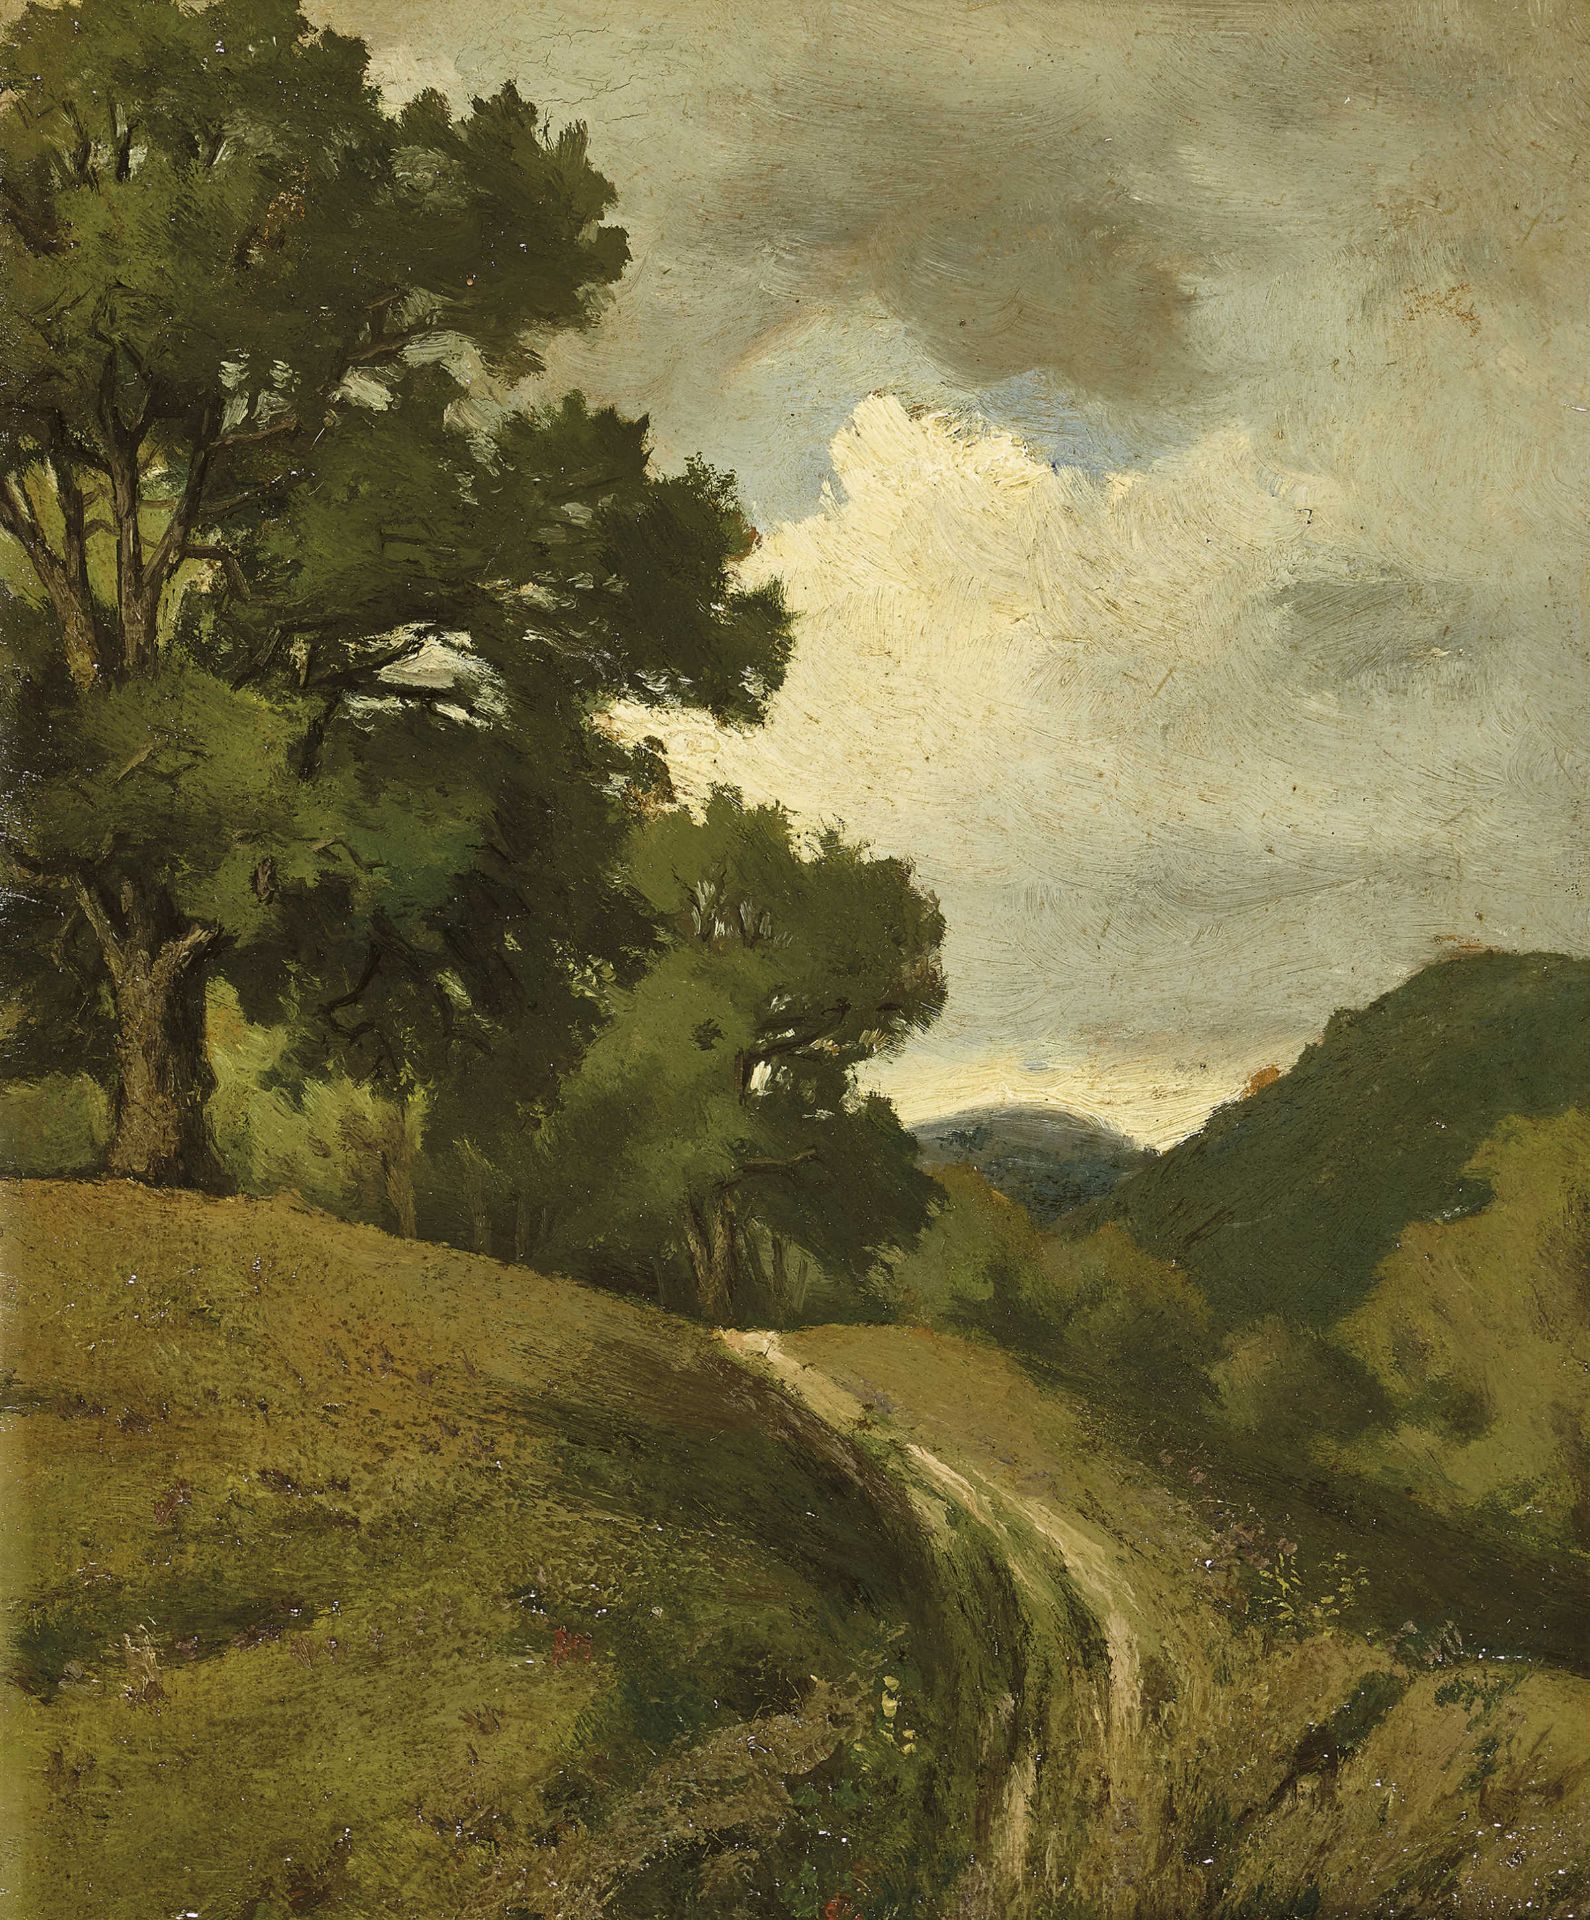 SCHWEIZ, 19. JH.: Hügelige Landschaft mit Bäumen.